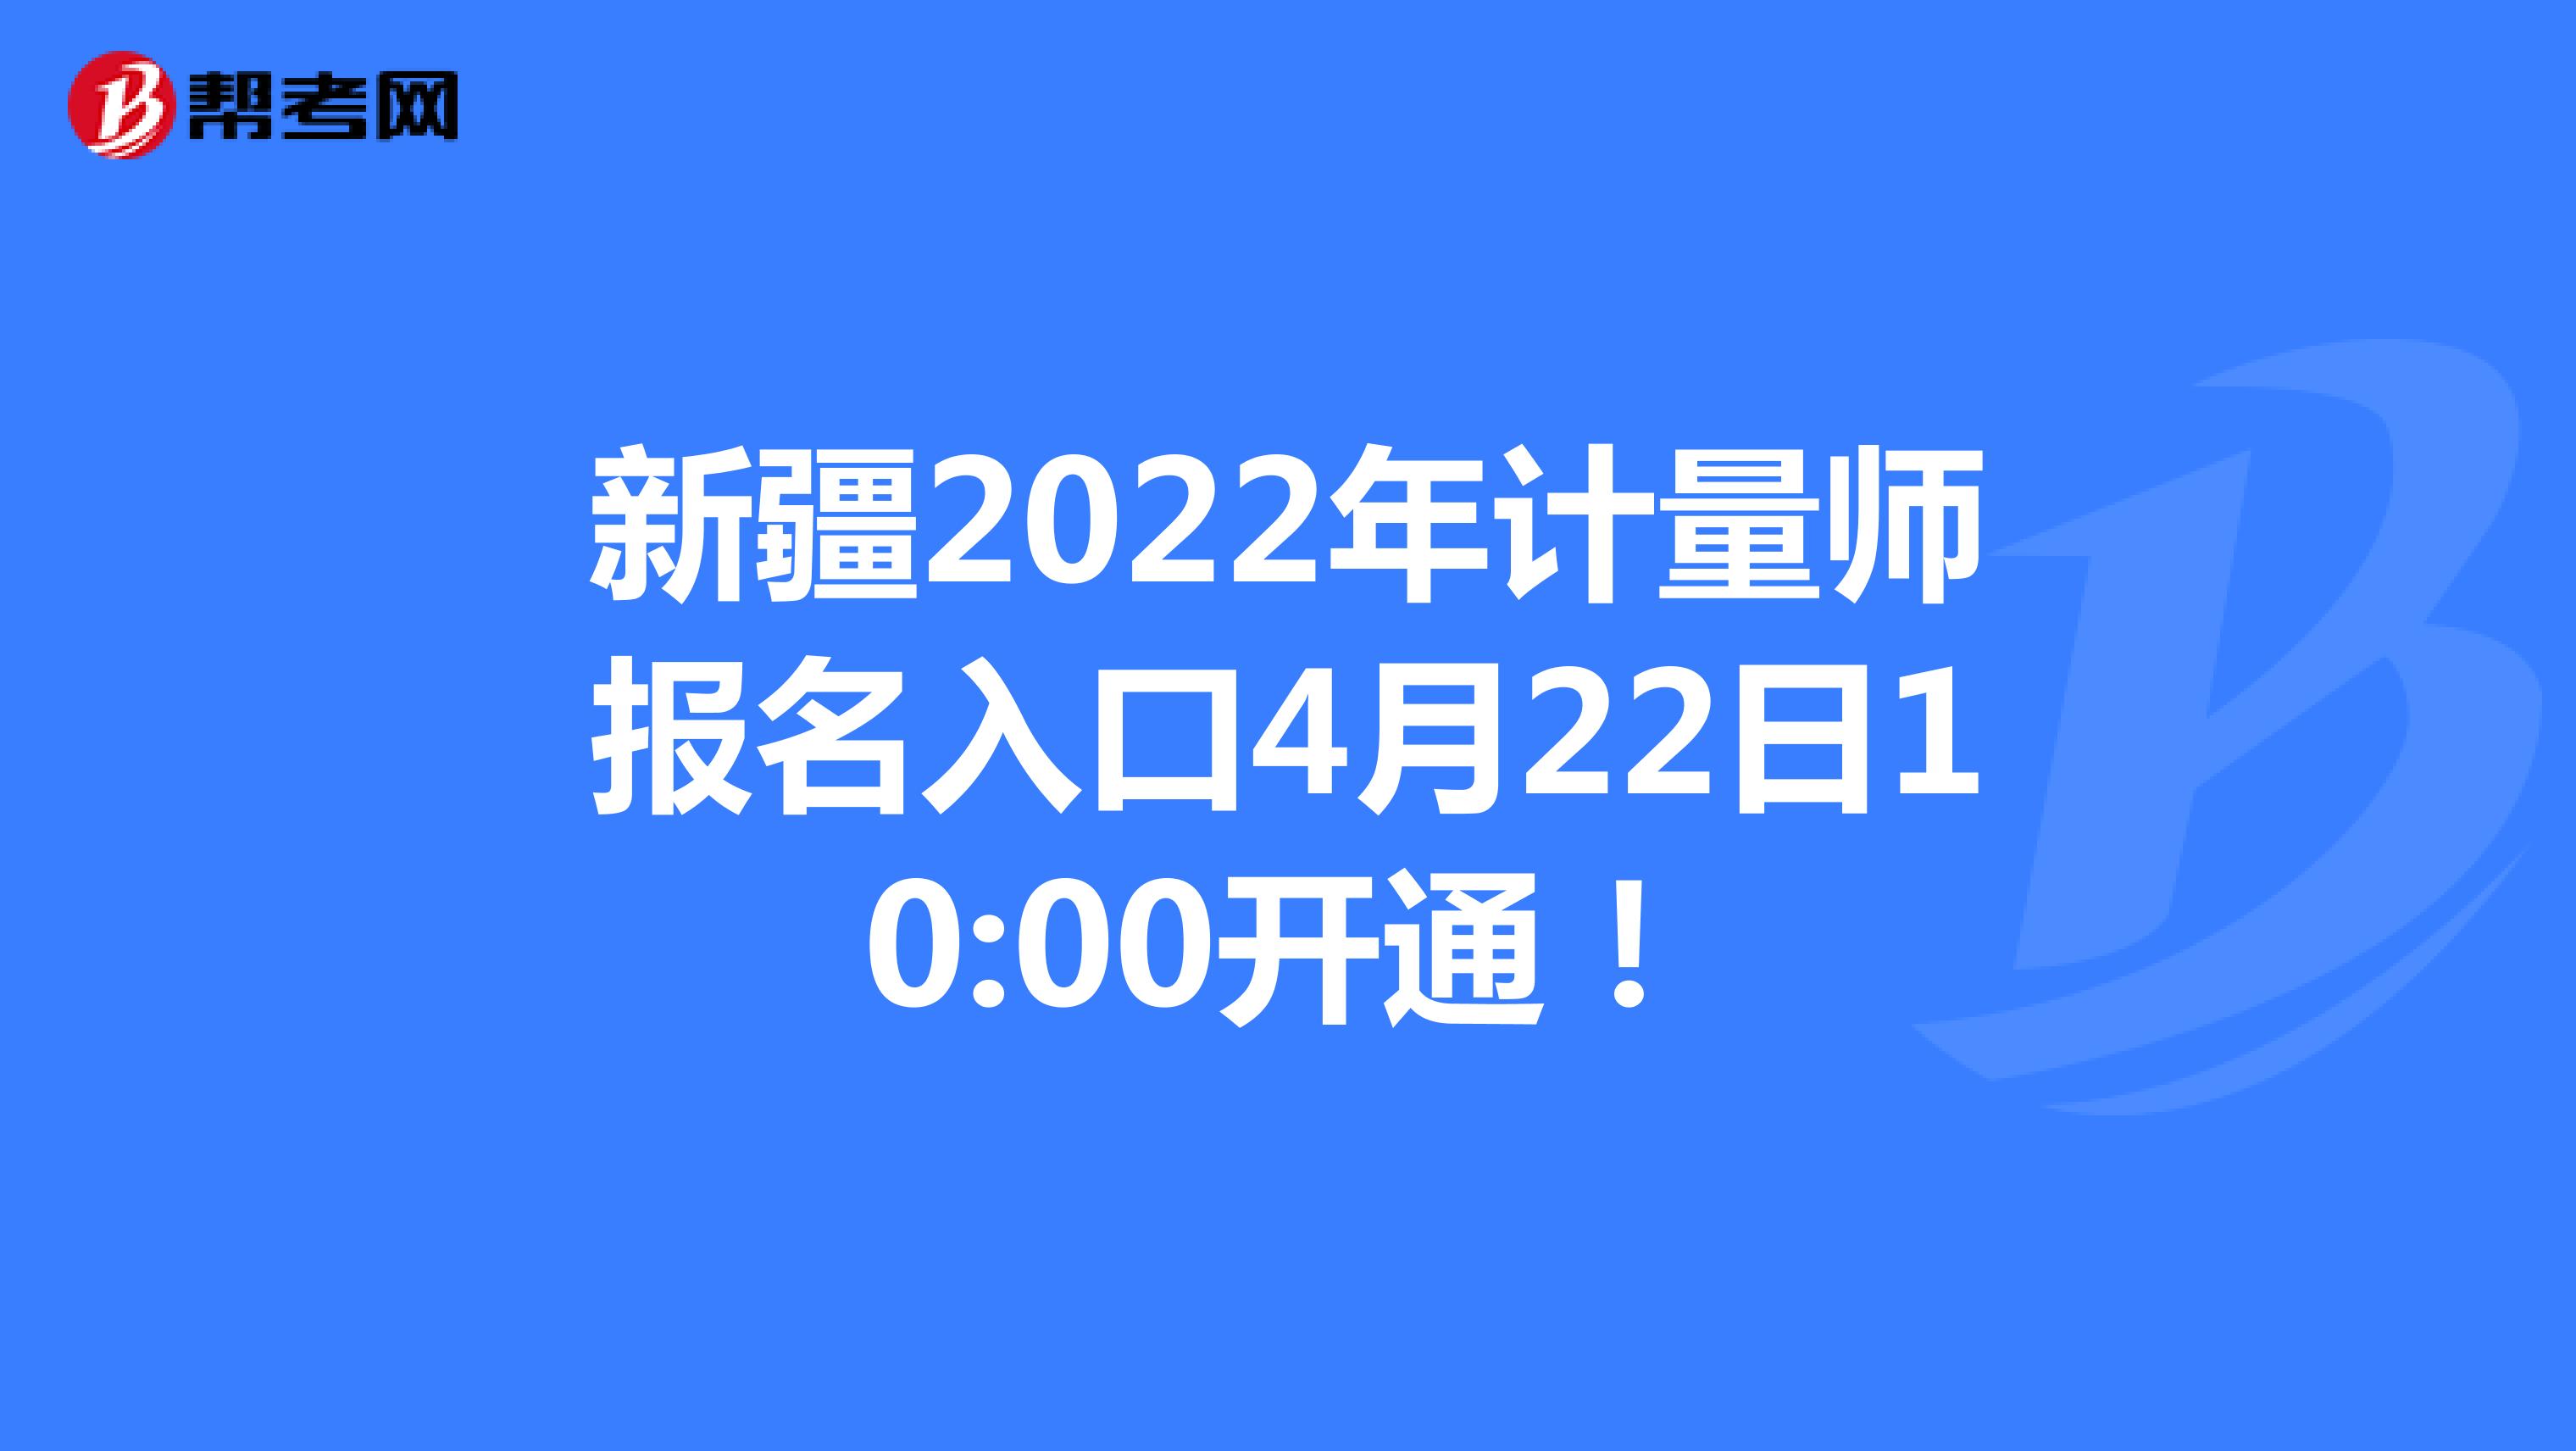 新疆2022年计量师报名入口4月22日10:00开通！